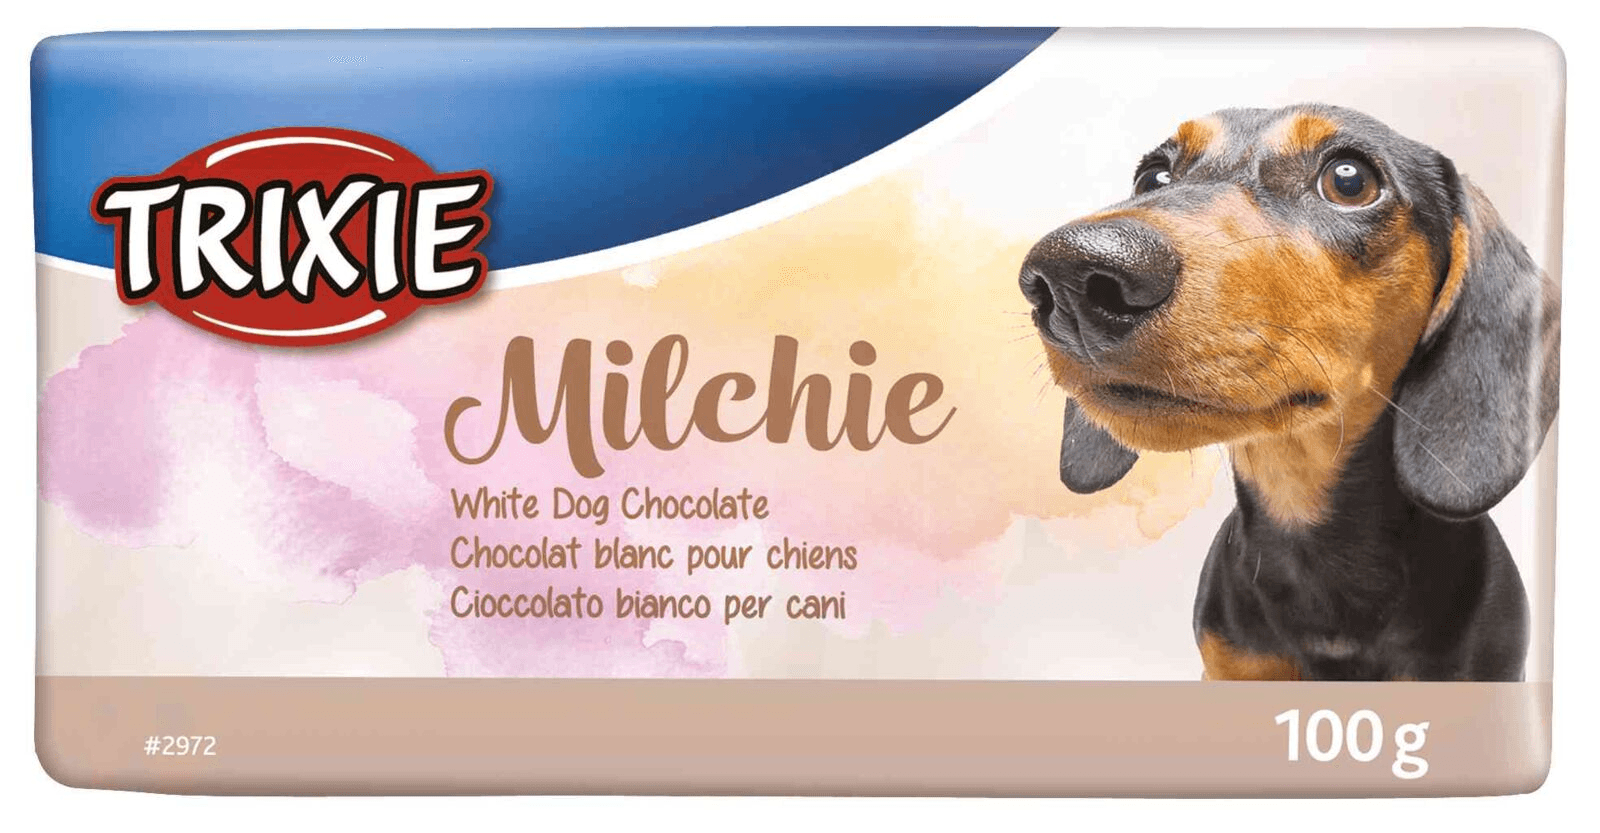 TRIXIE Poslastica za pse Milchie Bela čokolada 100g 2972